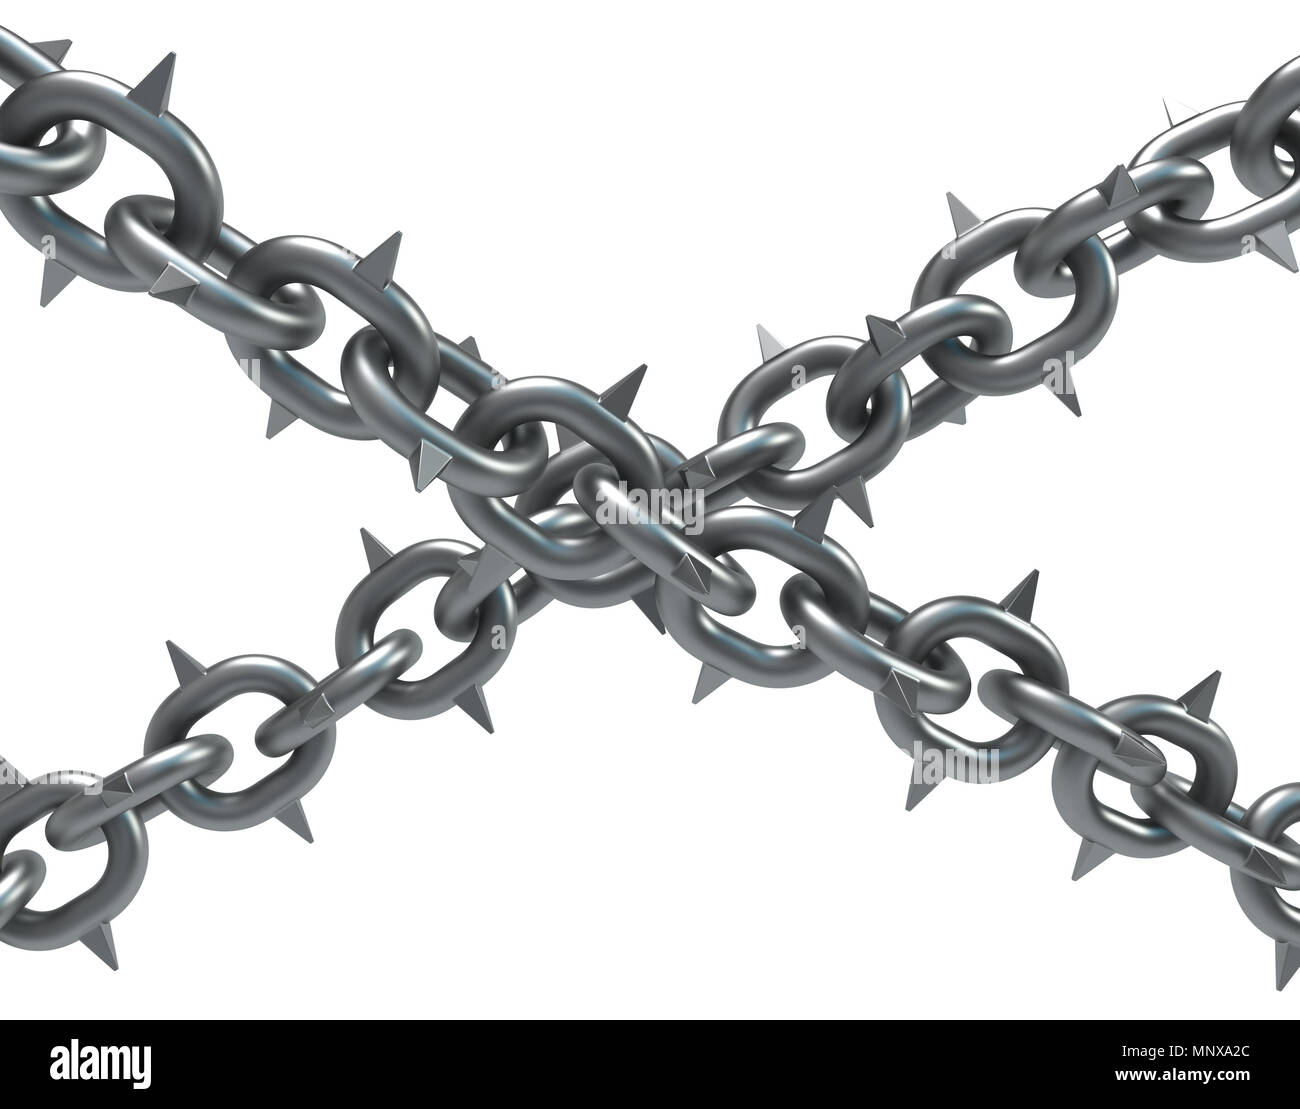 Cruce de cadenas con púas metálicas oscuras ilustración 3d, aisladas,  horizontal, sobre blanco Fotografía de stock - Alamy